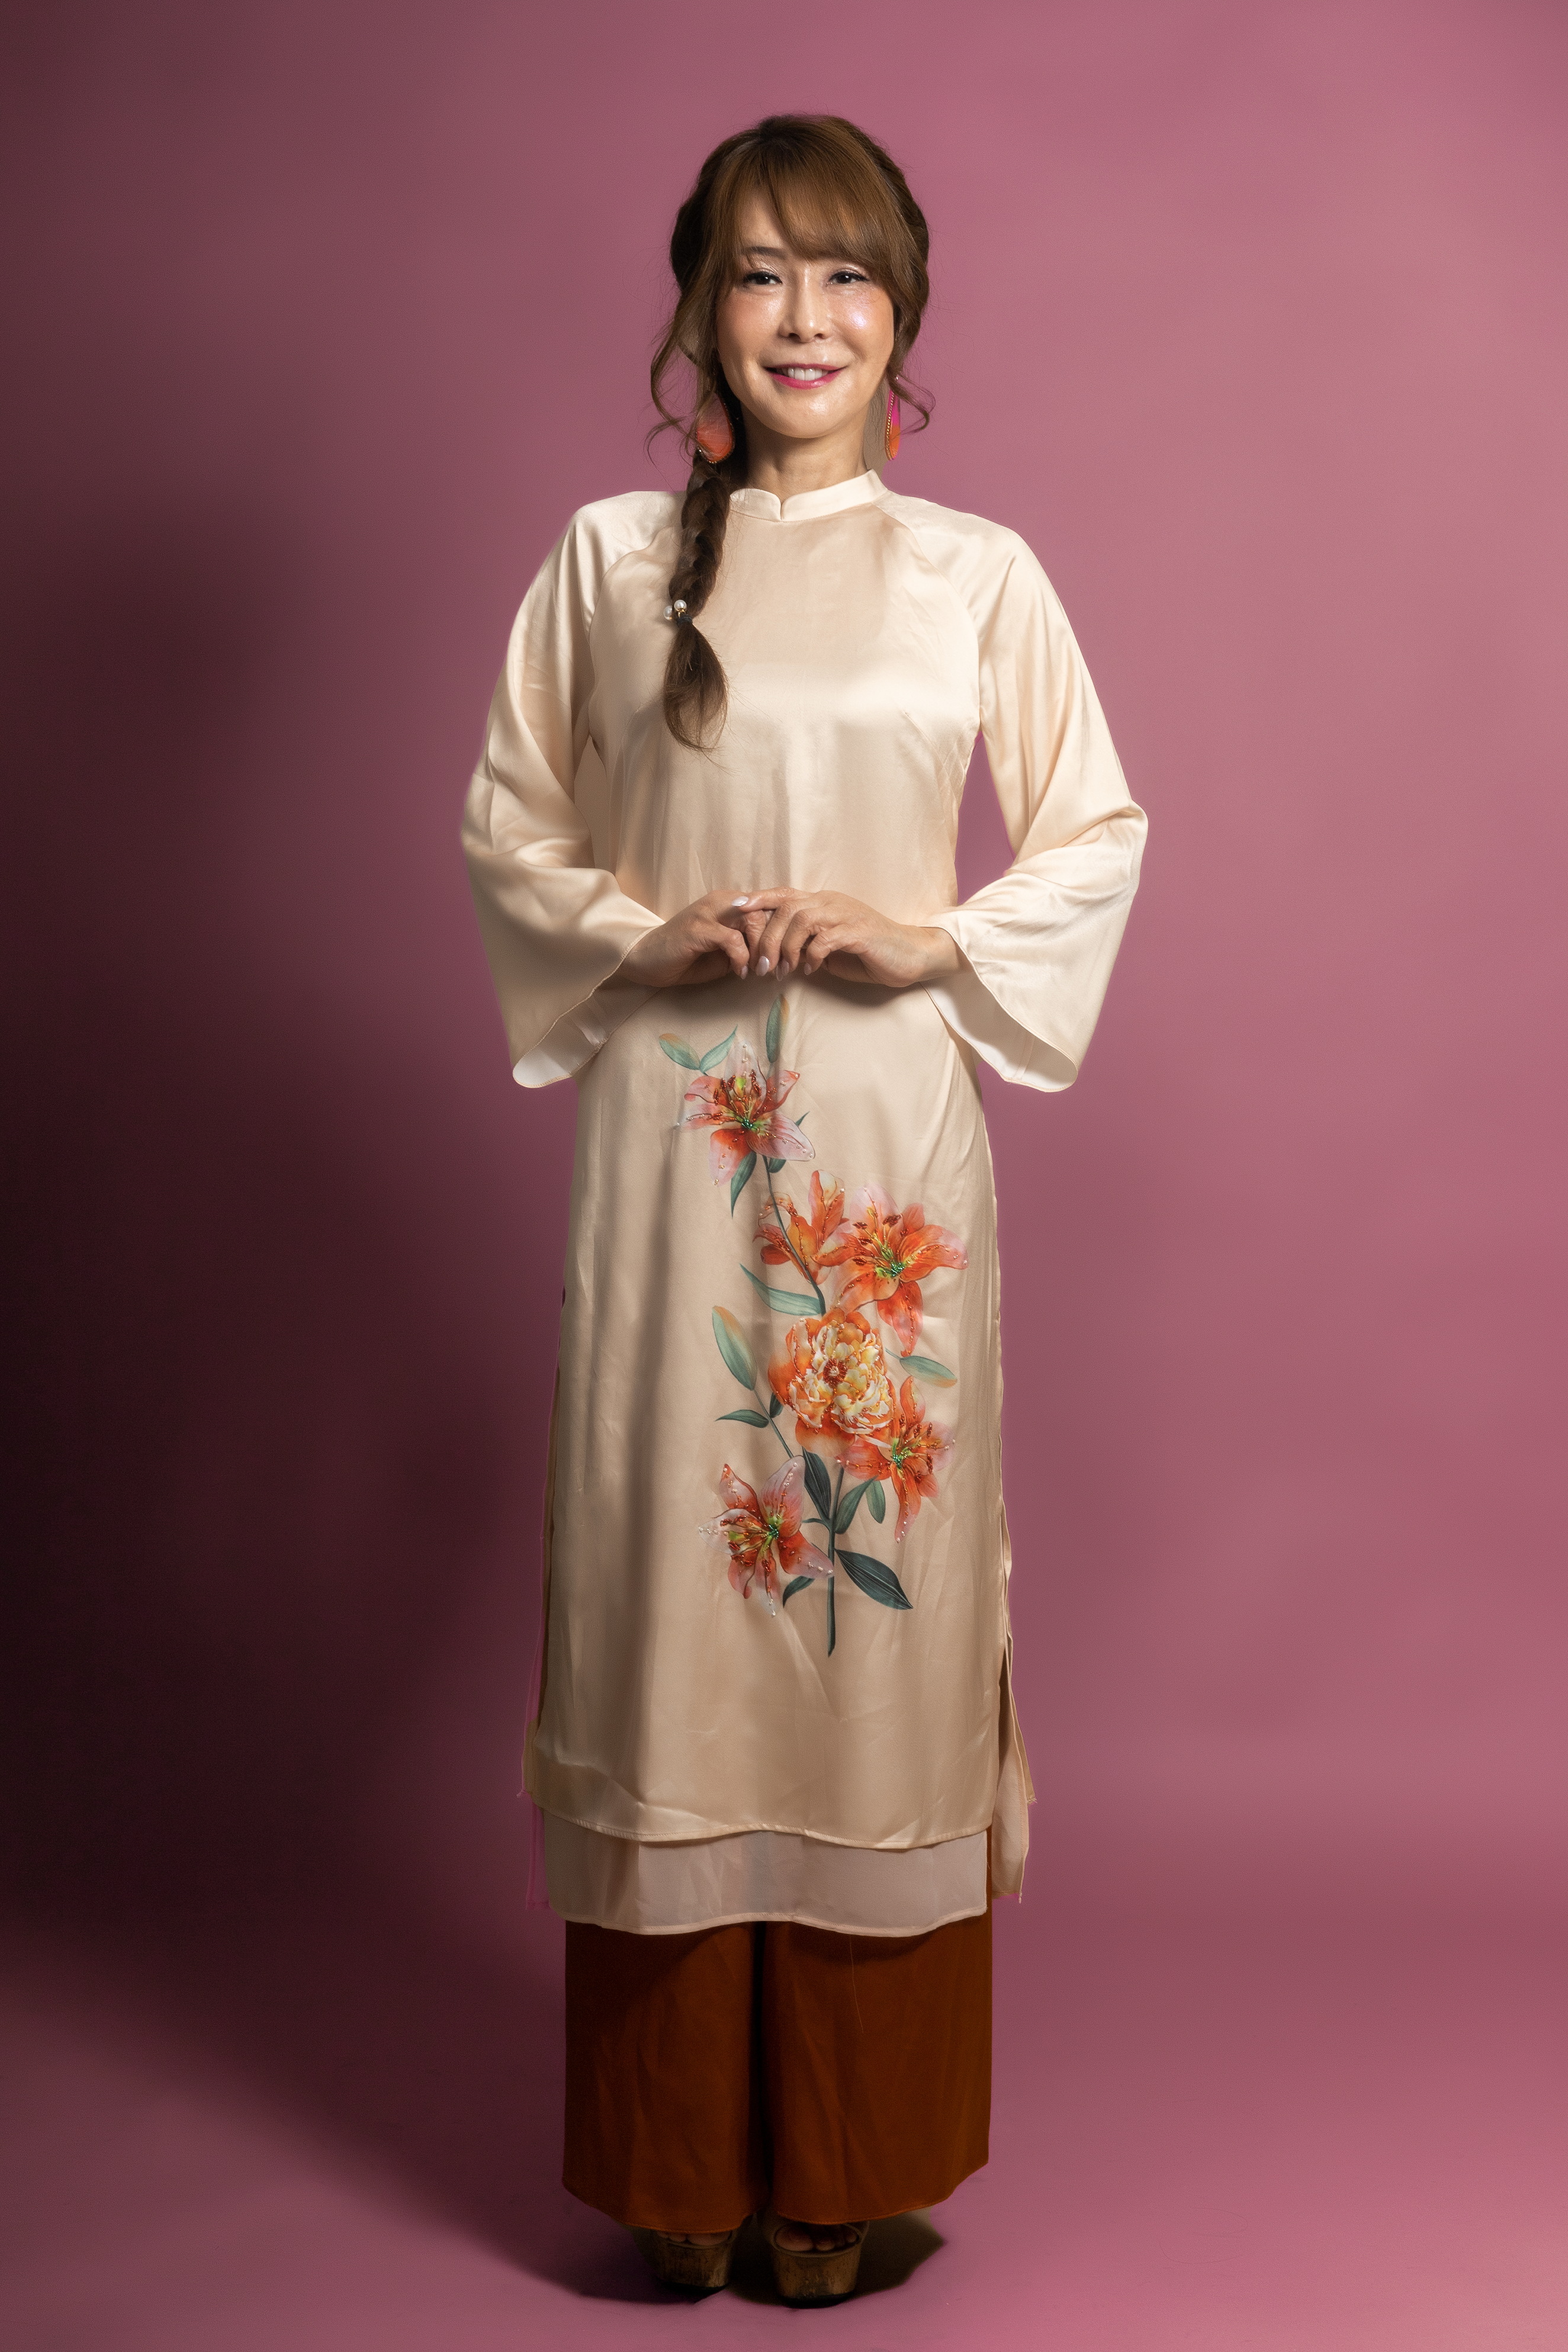 QUẢNG CÁO NỮ - ÁO DÀI BÁCH HỢP Áo dài trang phục dân tộc Việt Nam (Không kèm quần) 